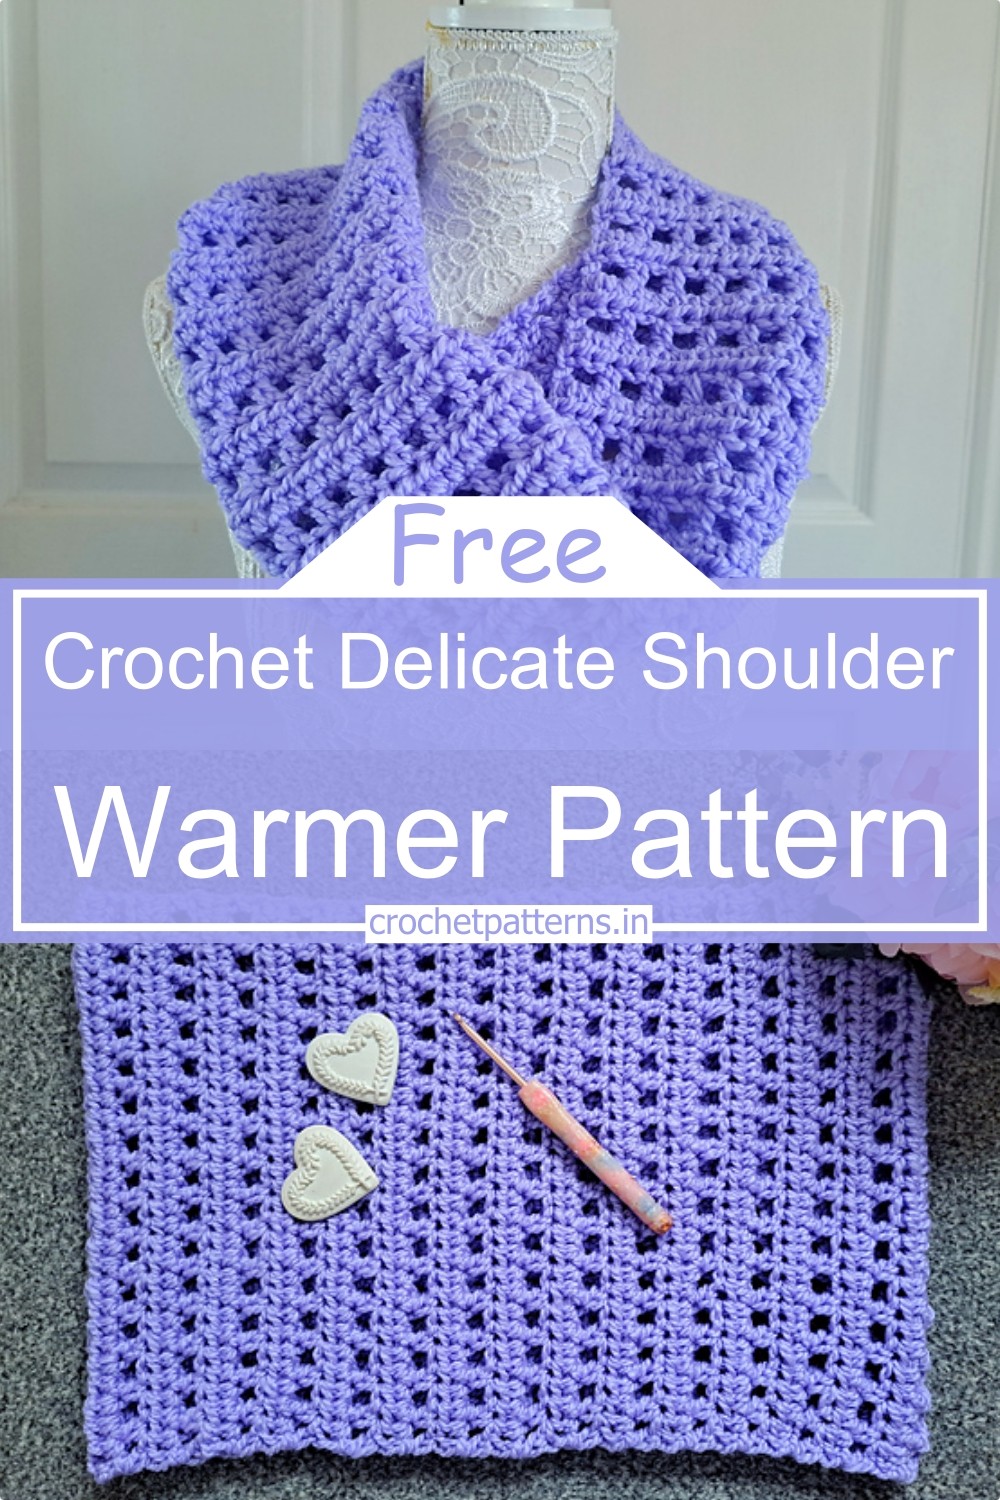 Crochet Delicate Shoulder Warmer Pattern